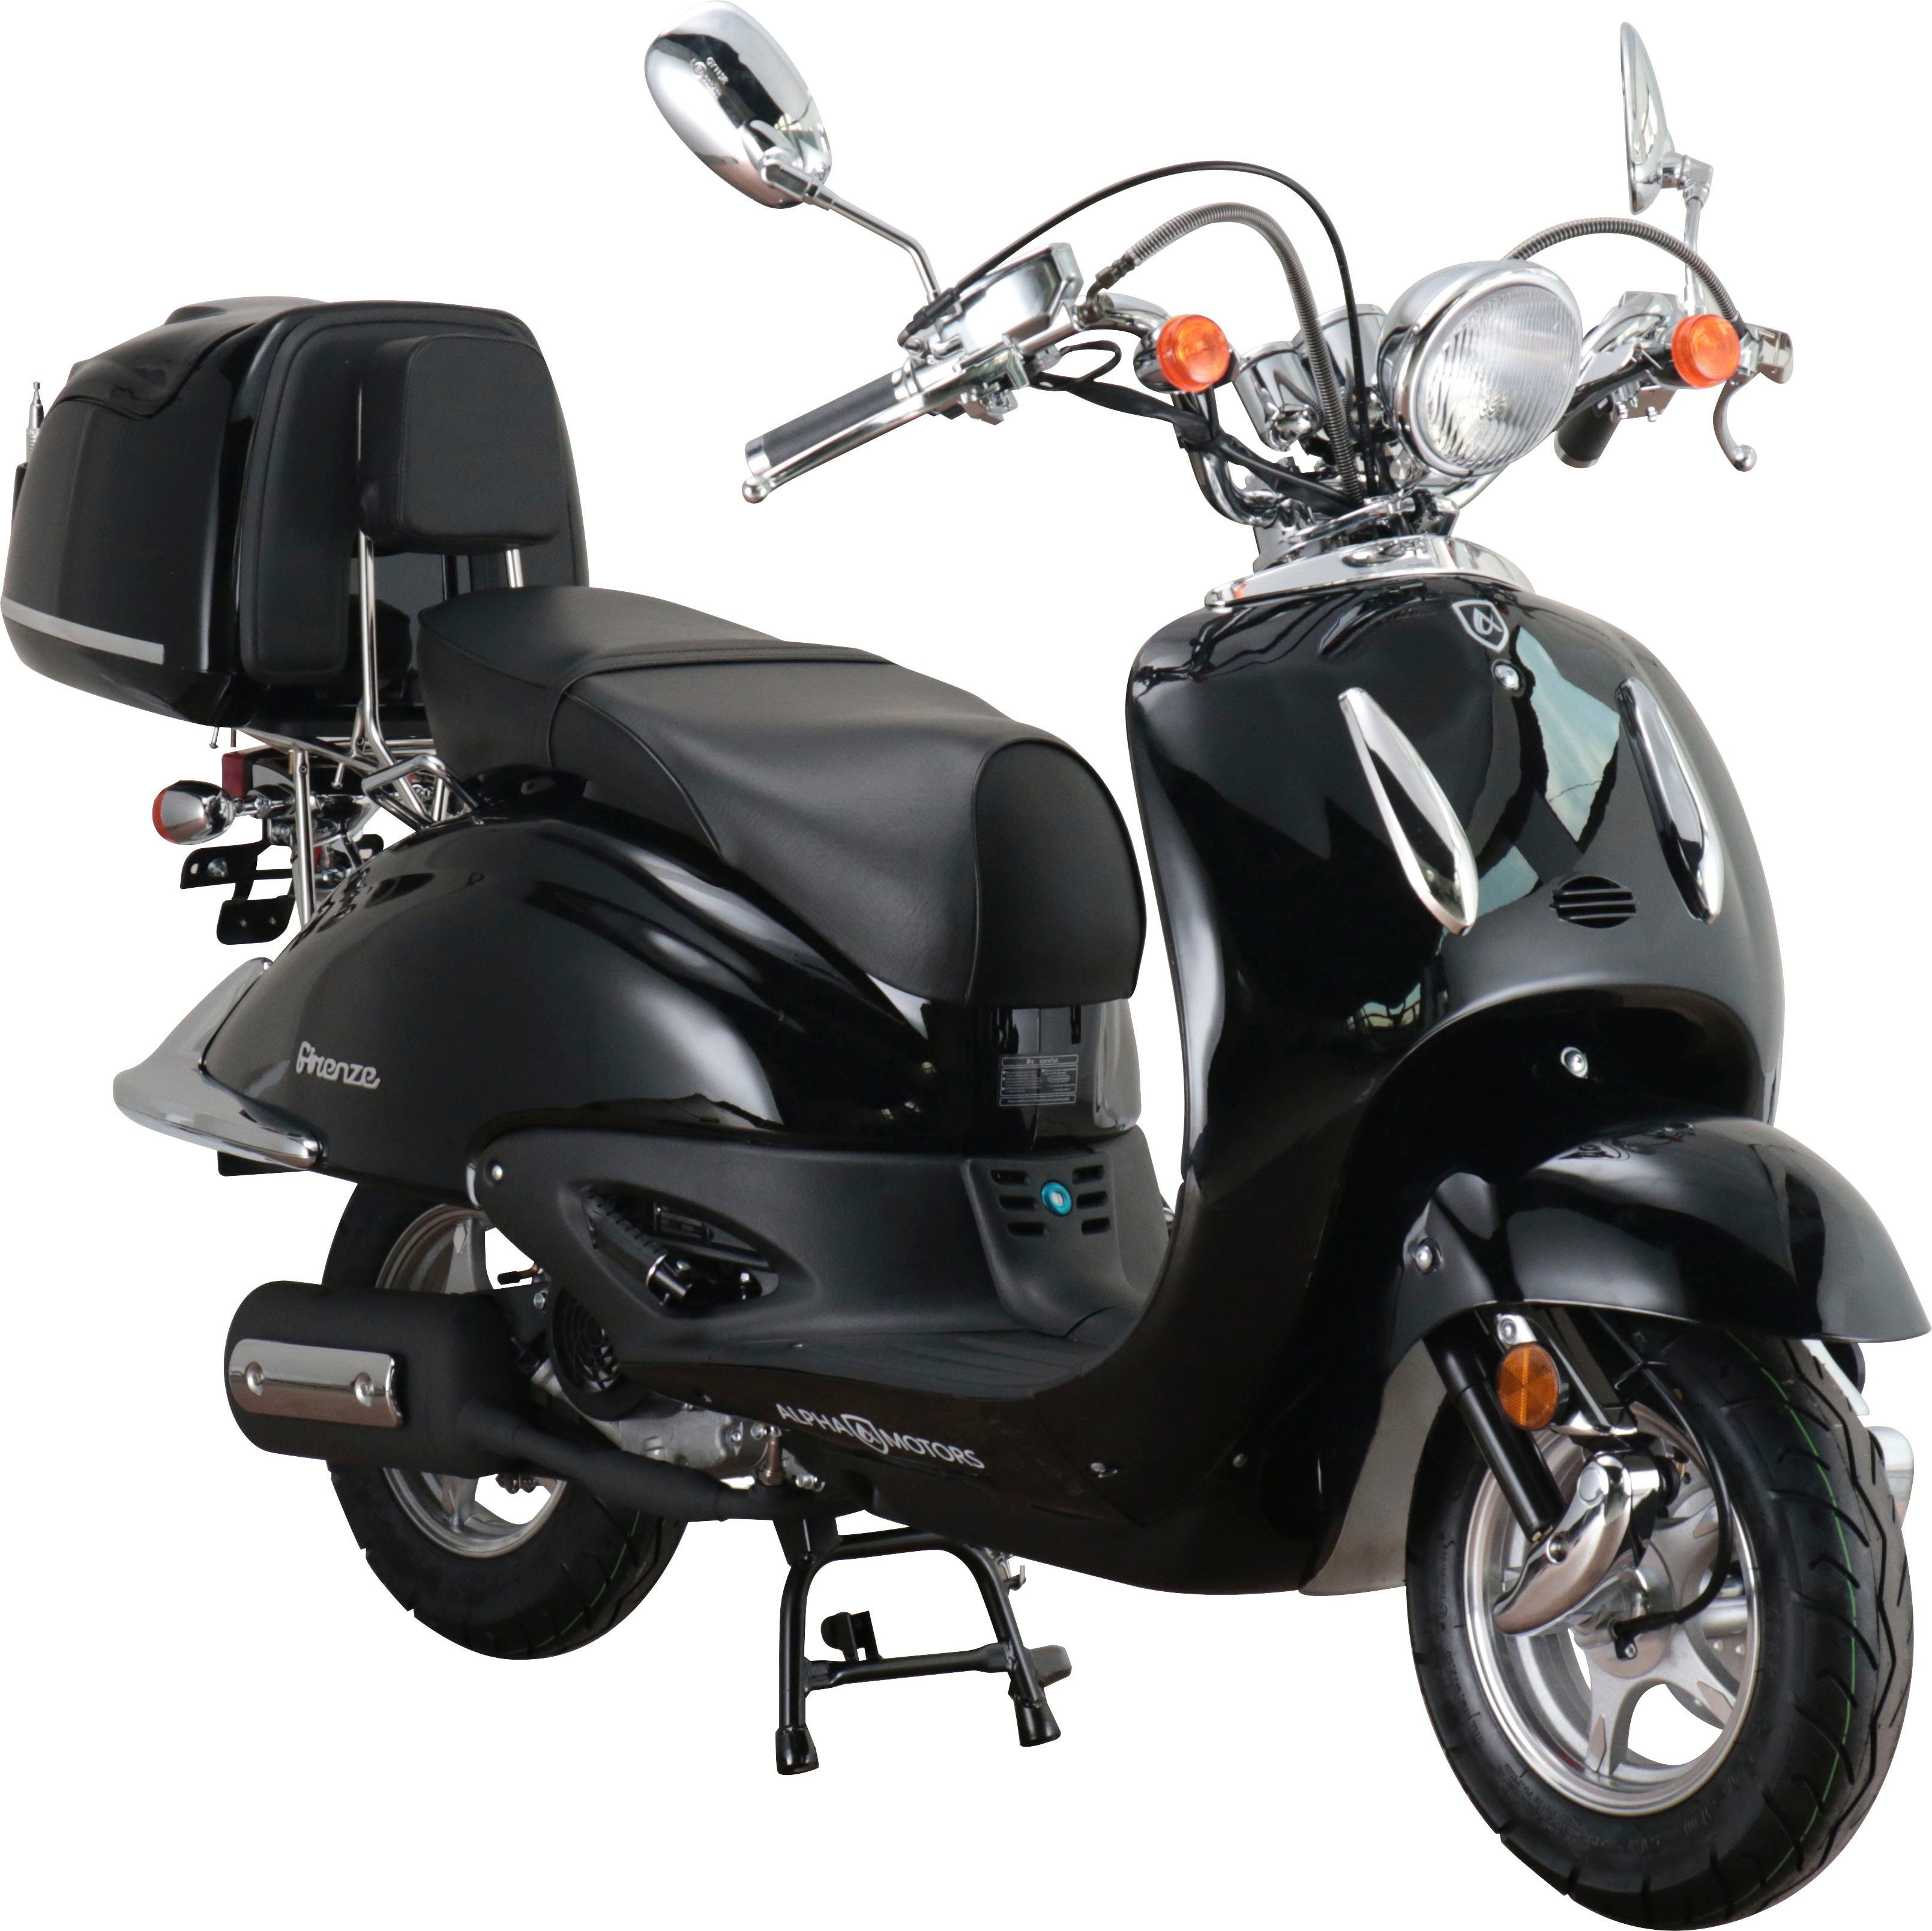 Alpha Topcase 50 Motorroller km/h, ccm, 45 5, inkl. Retro Firenze, Euro Motors